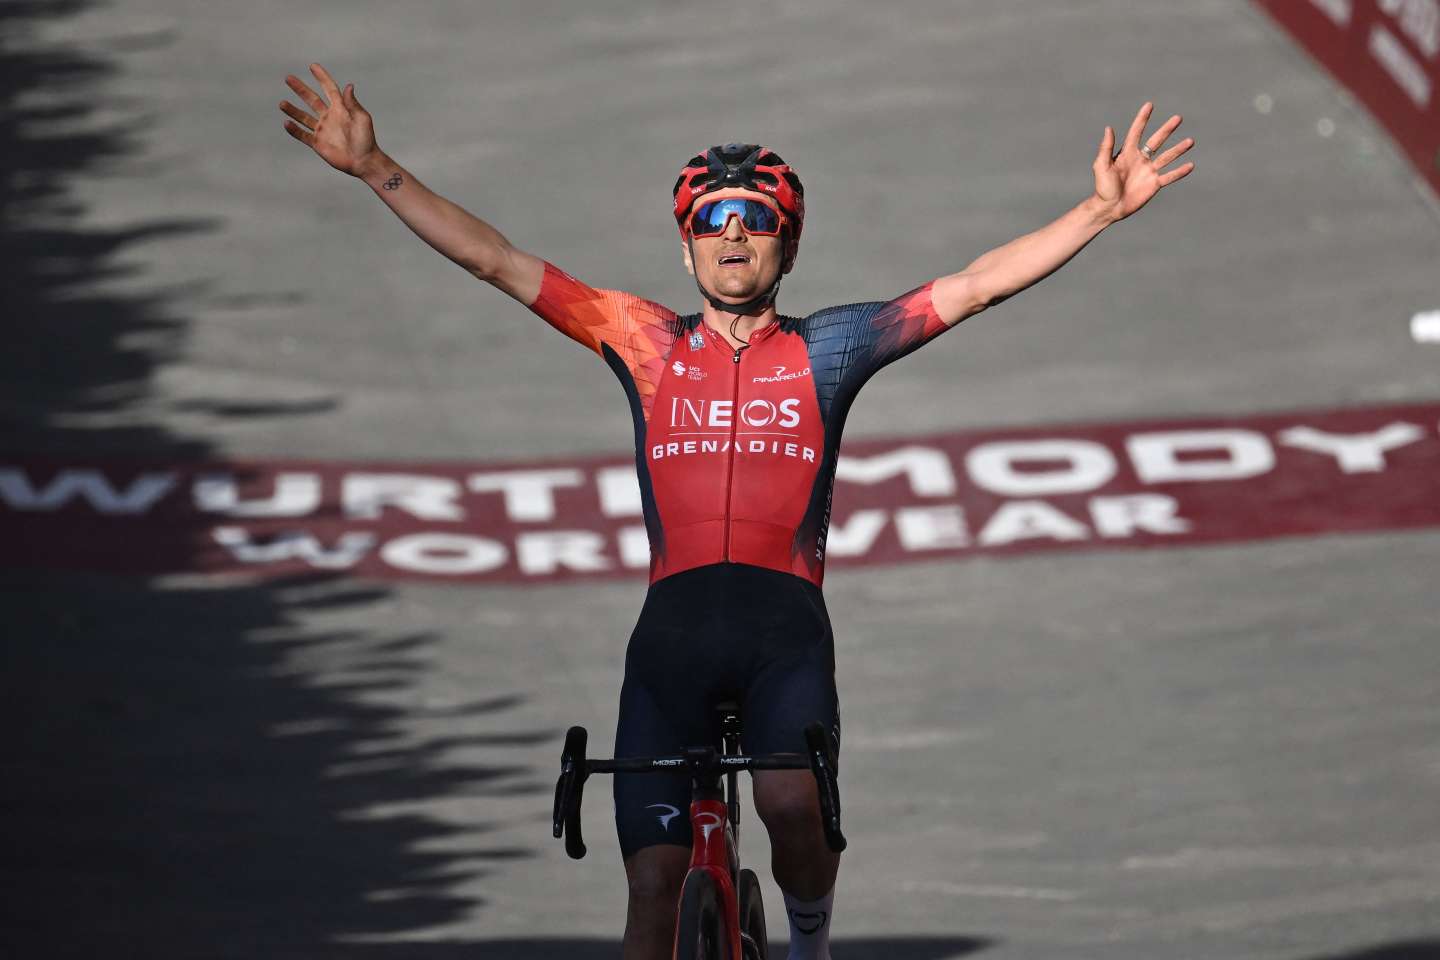 Cyclisme : Thomas Pidcock remporte les Strade Bianche devant Valentin Madouas